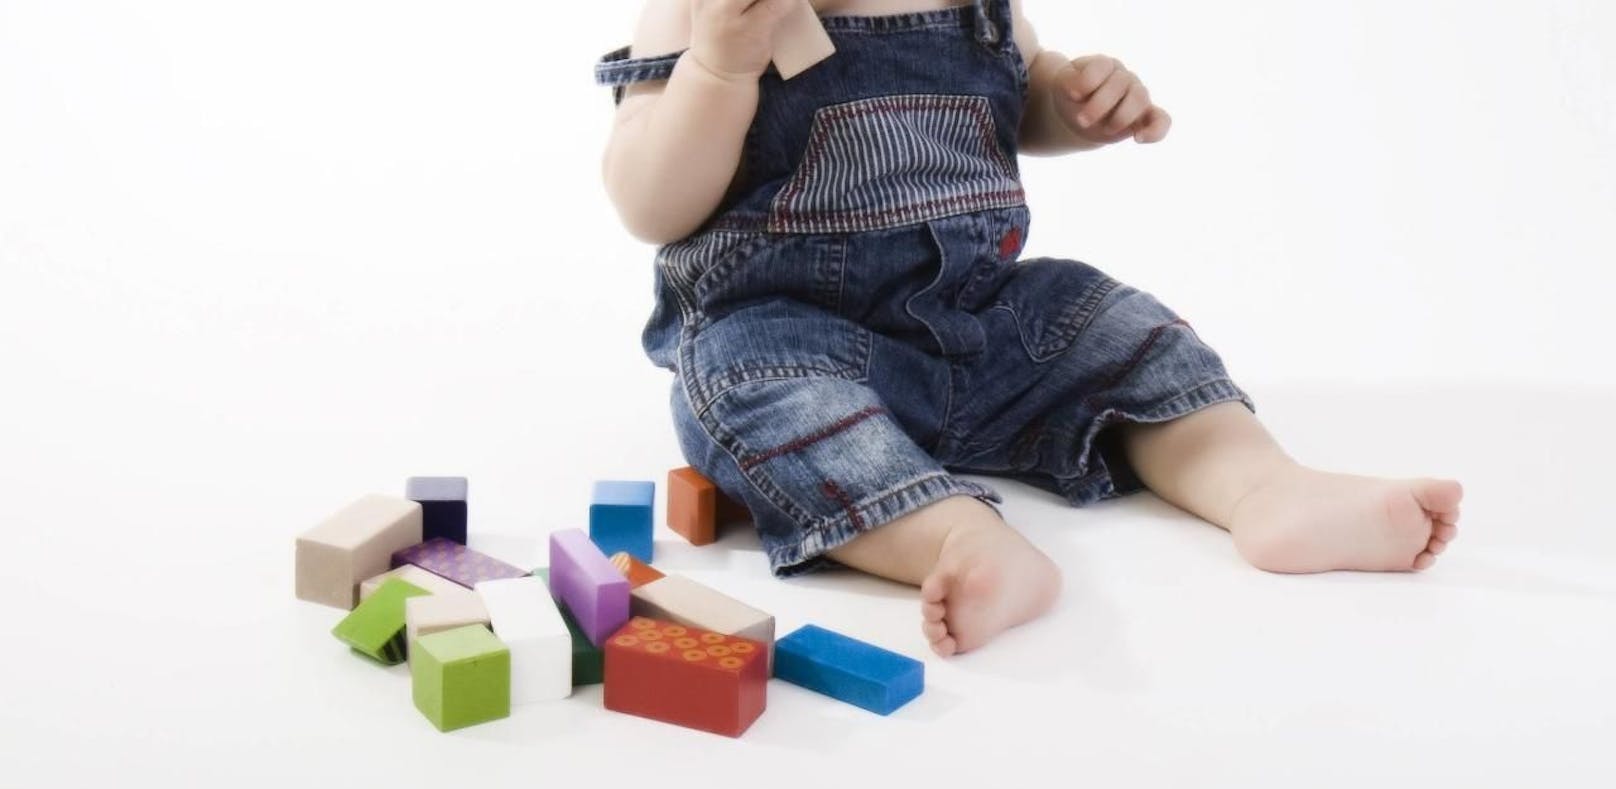 Gerade bei Babyspielzeug ist es wichtig, dass die Gegenstände nicht schadstoffbelastet sind.